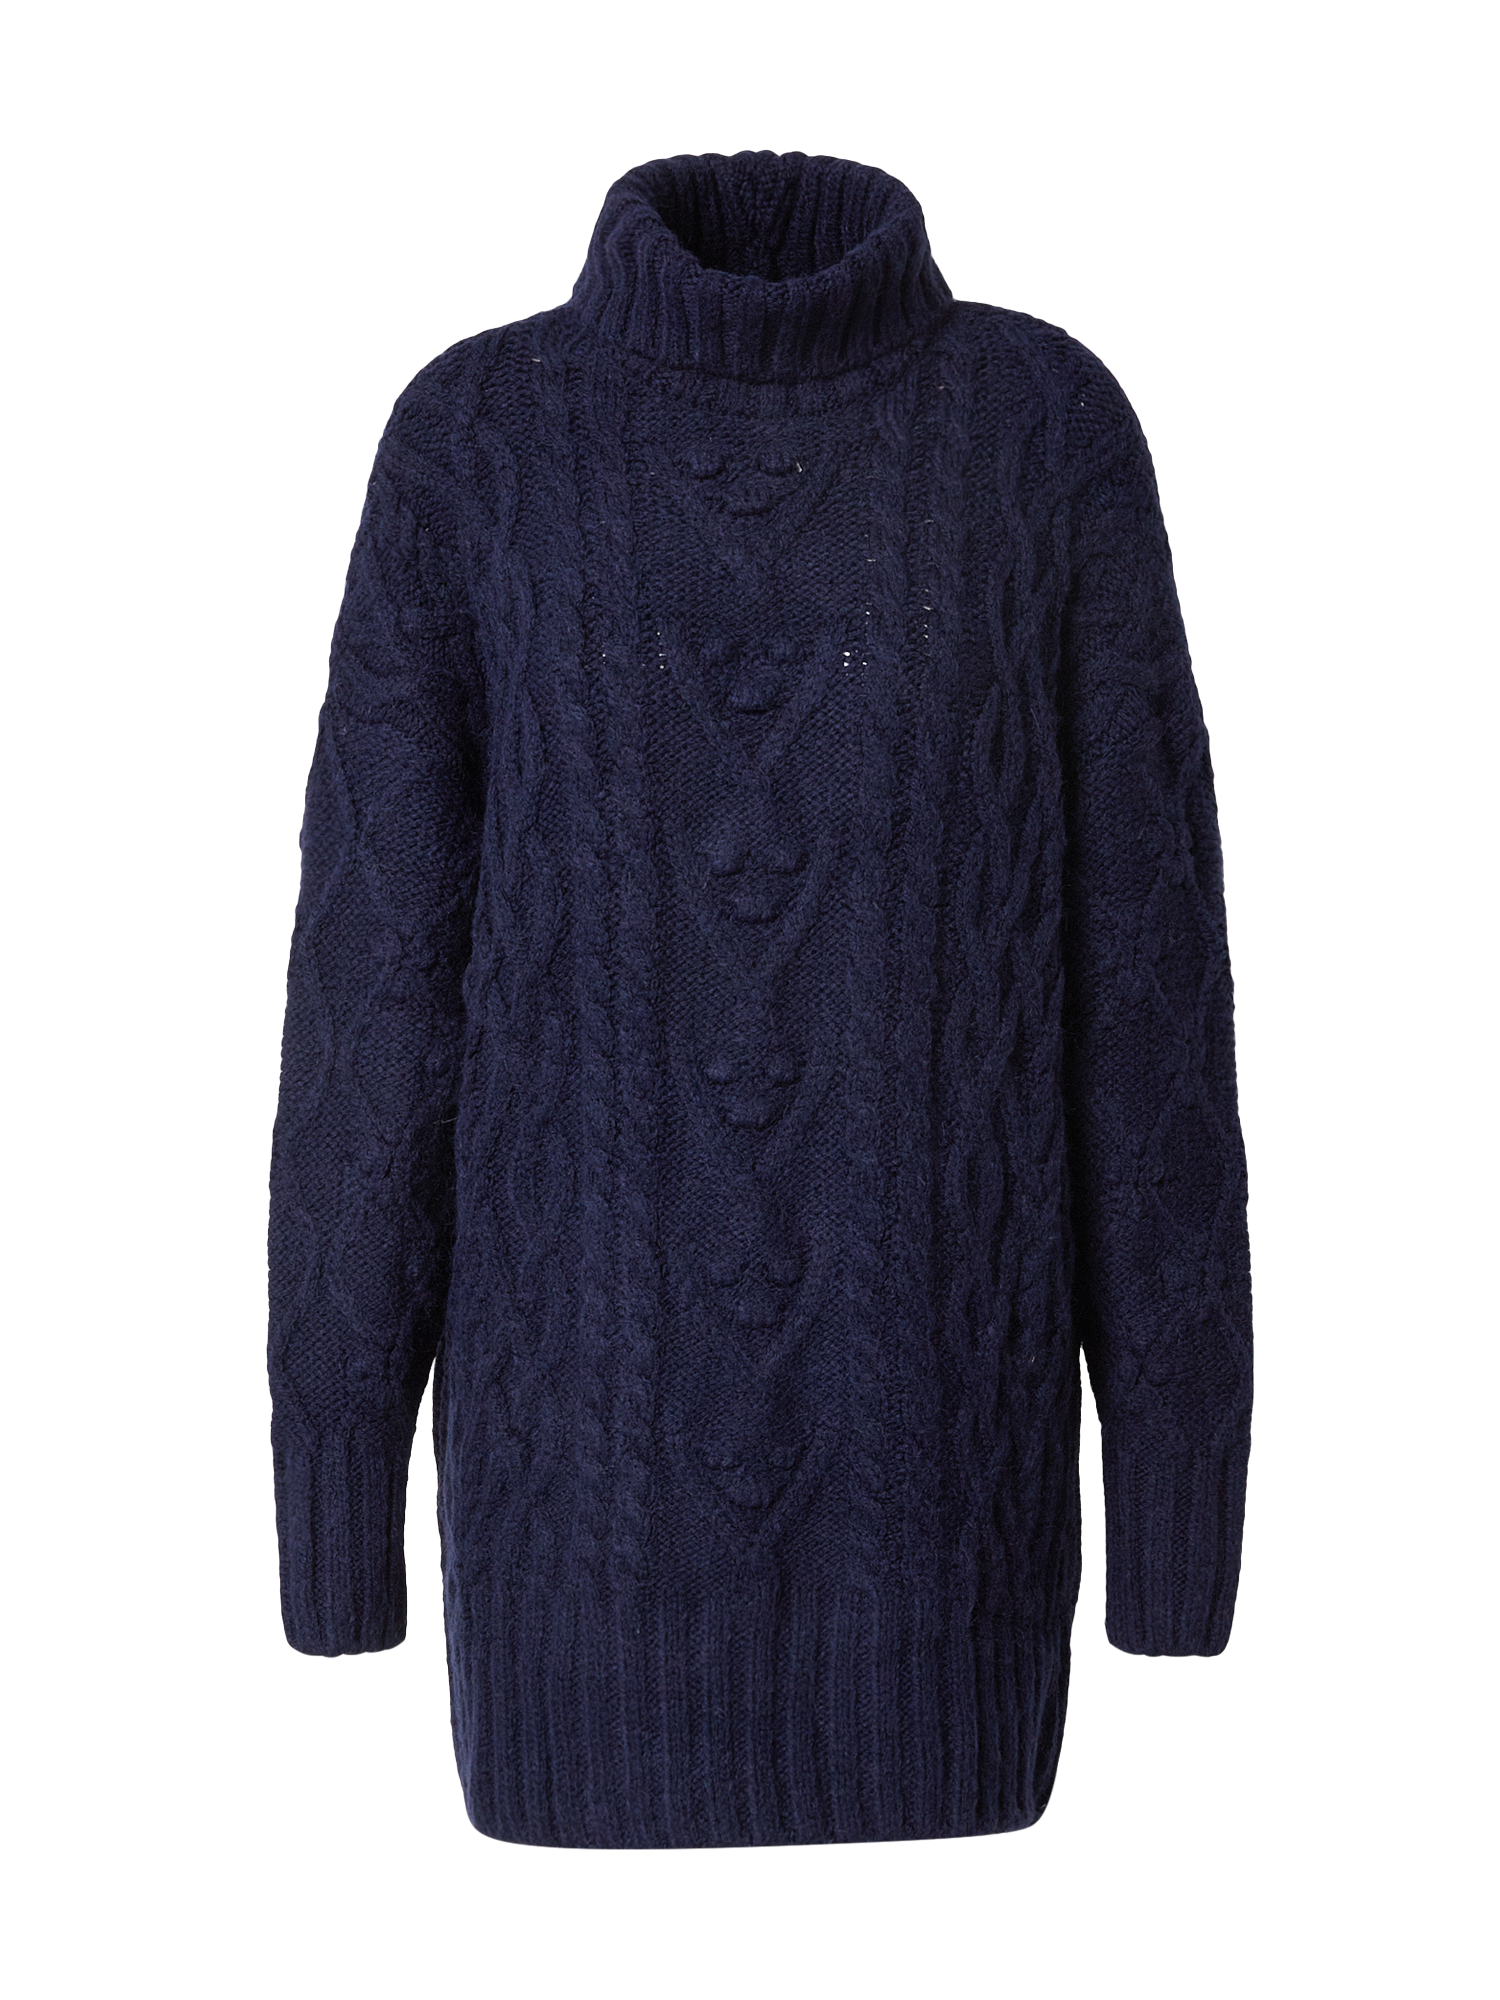 Odzież lEjwR River Island Sweter w kolorze Granatowym 